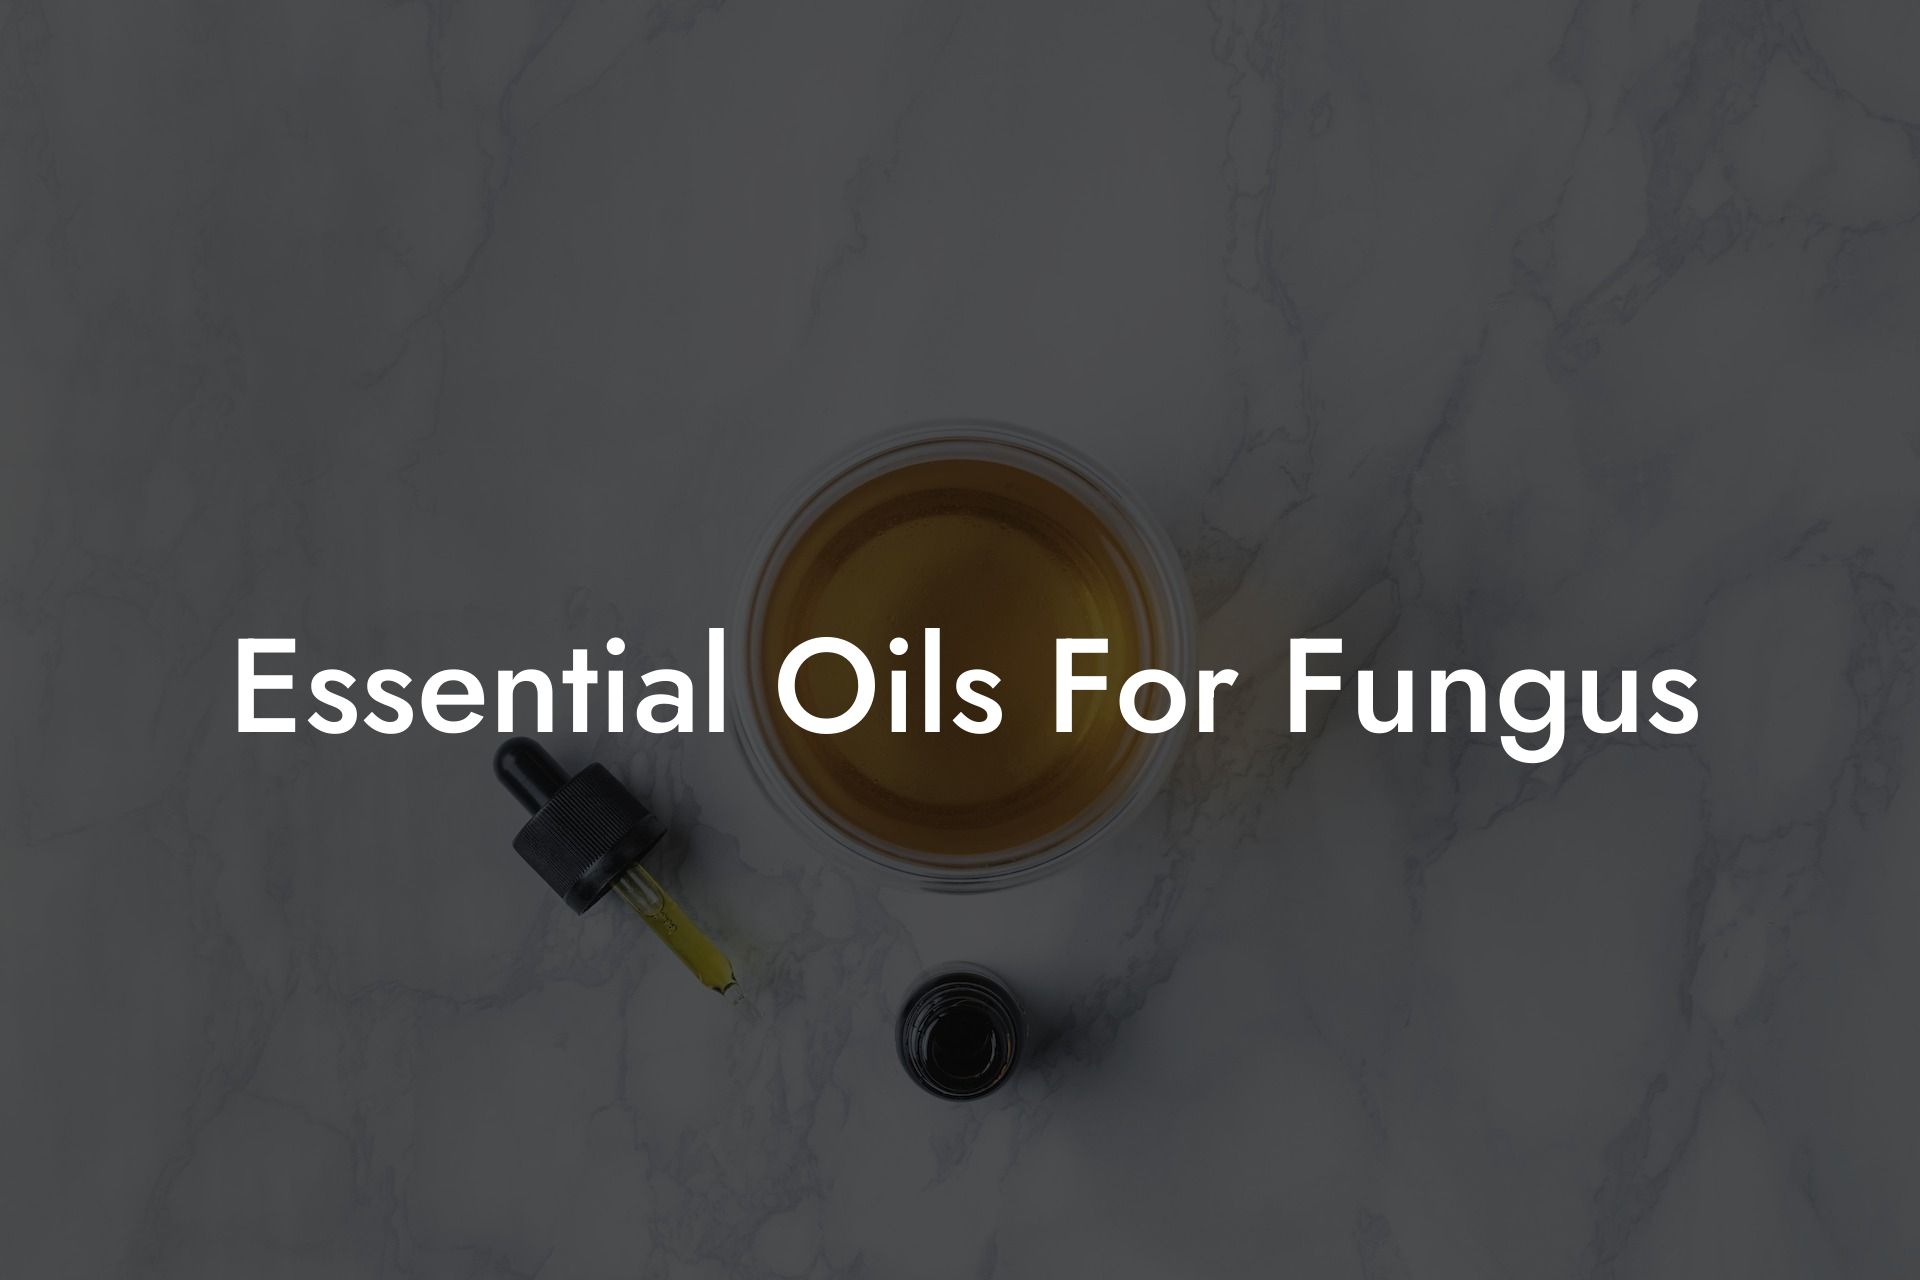 Essential Oils For Fungus